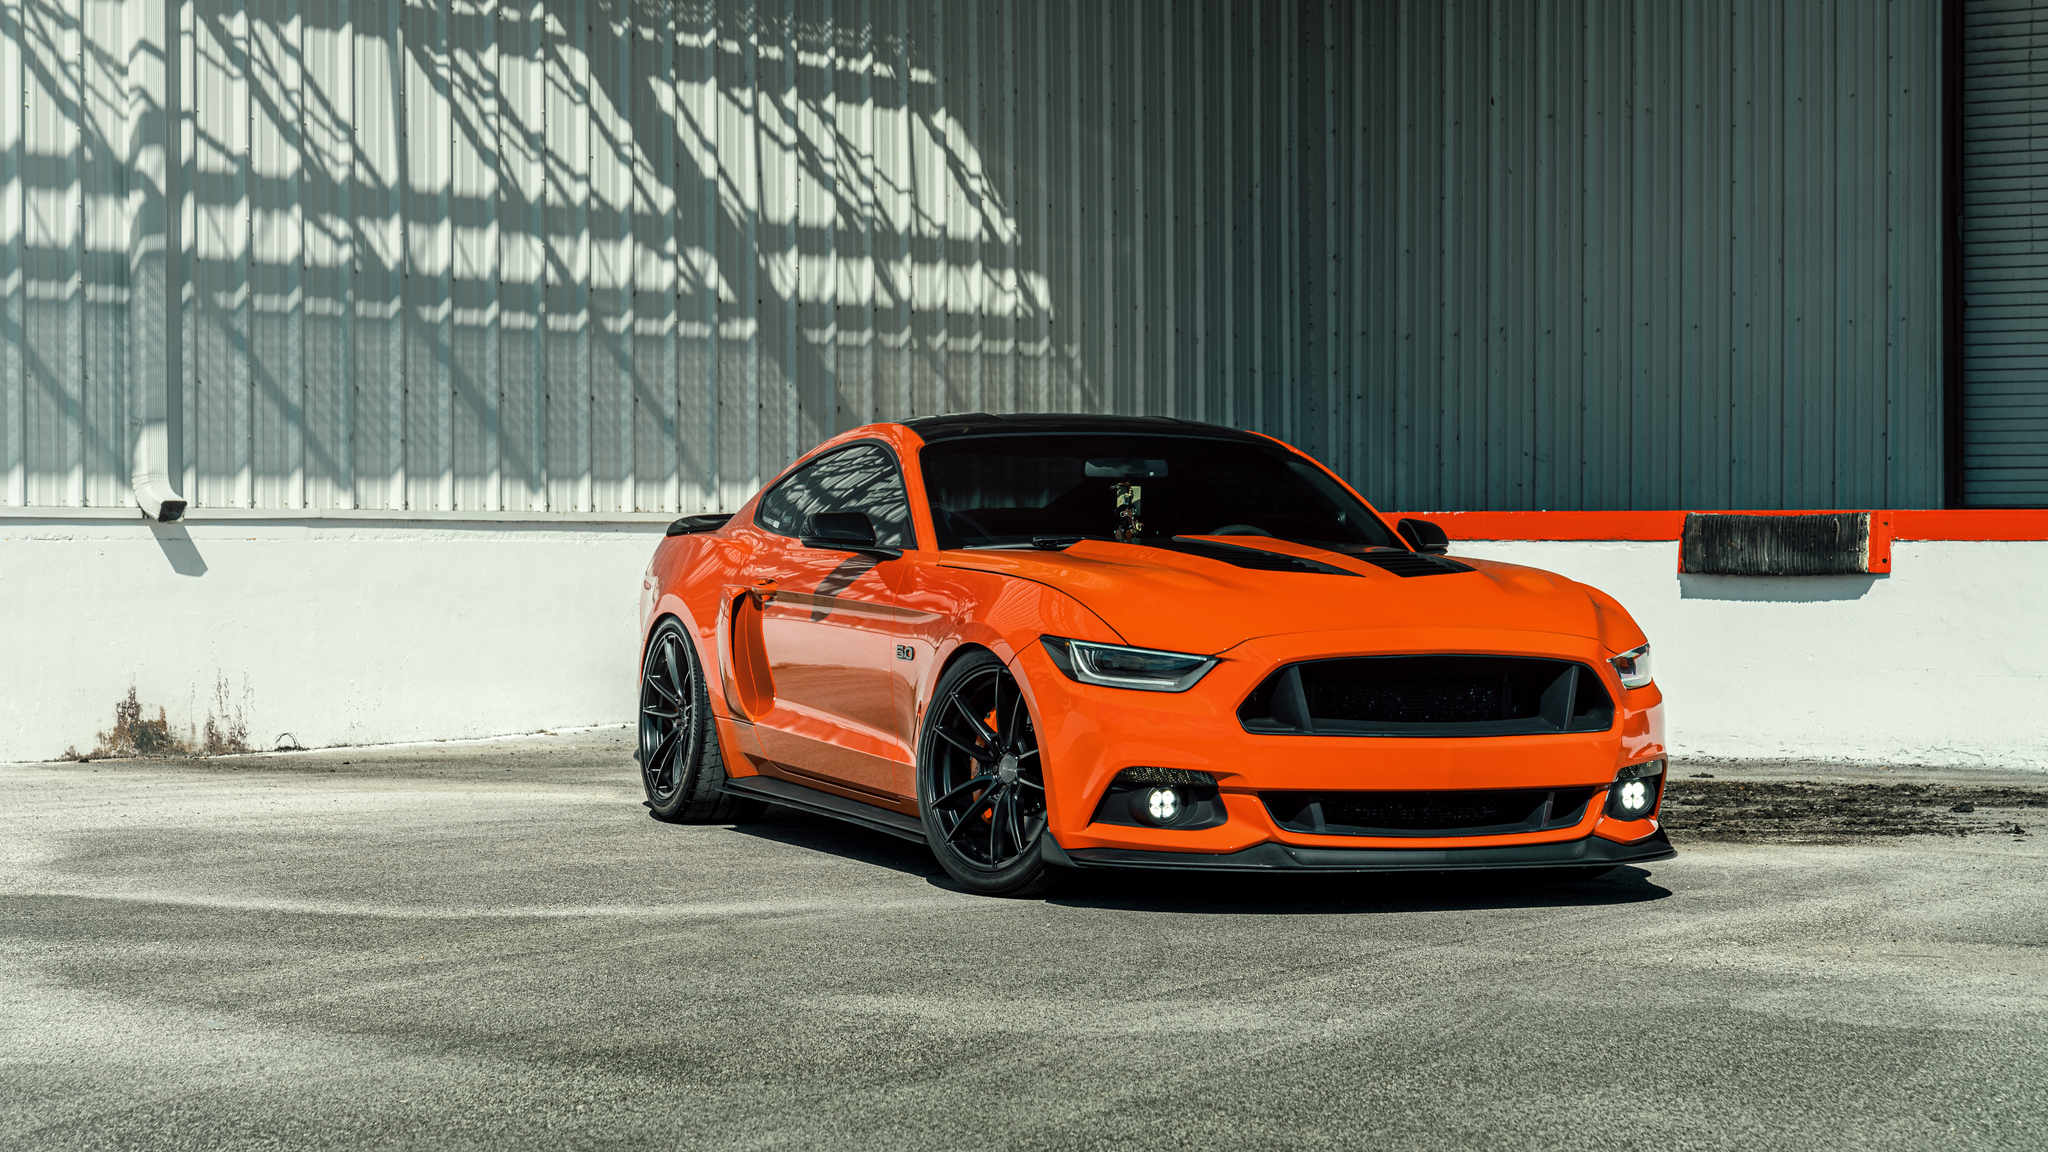 Ford Mustang là biểu tượng của tốc độ và sức mạnh trong ngành công nghiệp ô tô. Xem những hình ảnh về chiếc xe này và cảm nhận sự mạnh mẽ, thể thao mà nó mang lại.